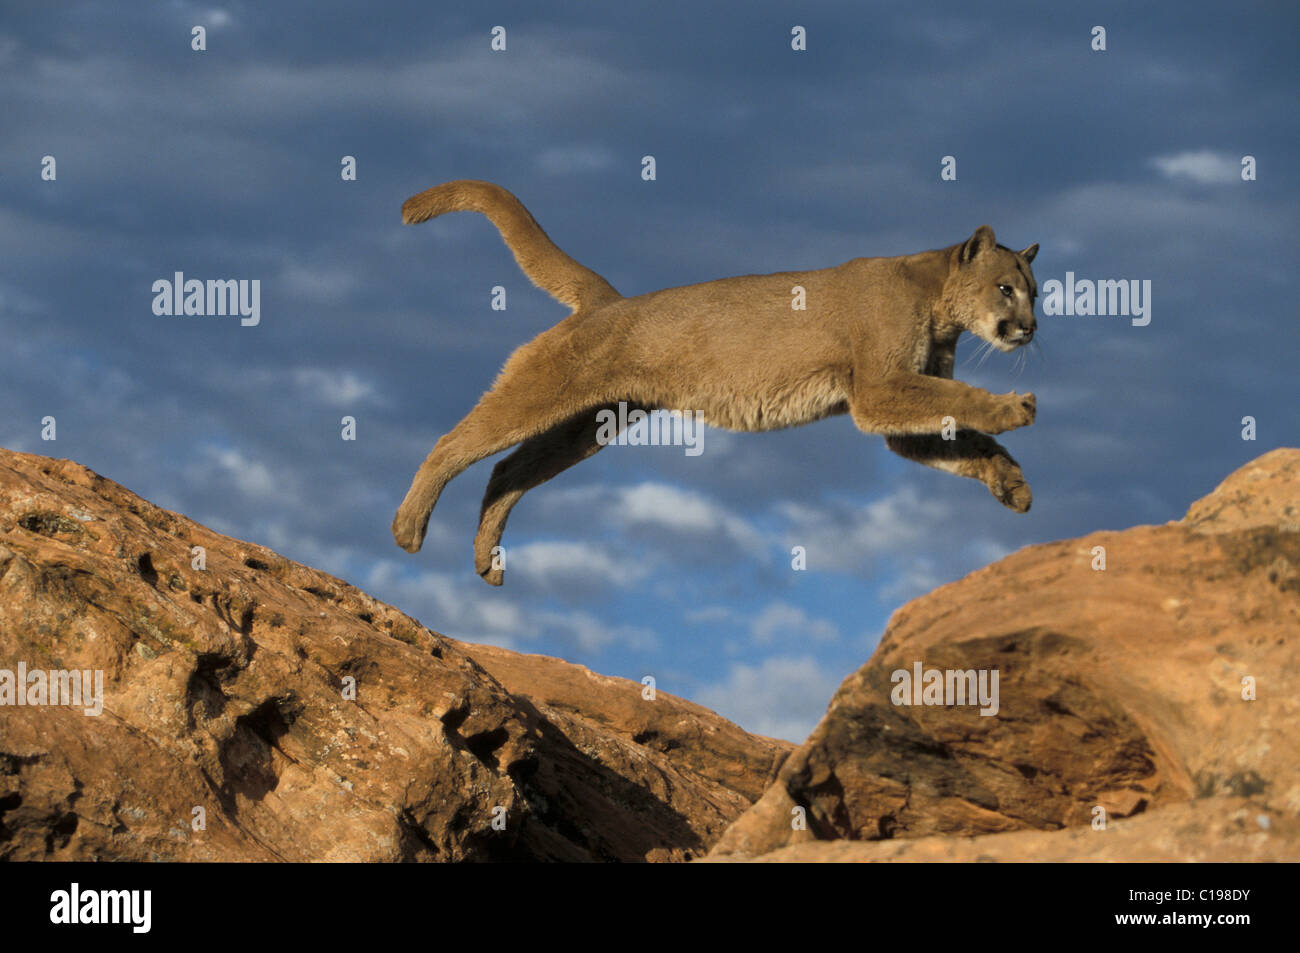 Les jeunes Cougar ou Puma (Puma concolor) sautant entre les roches,  Montana, USA, Amérique du Nord Photo Stock - Alamy